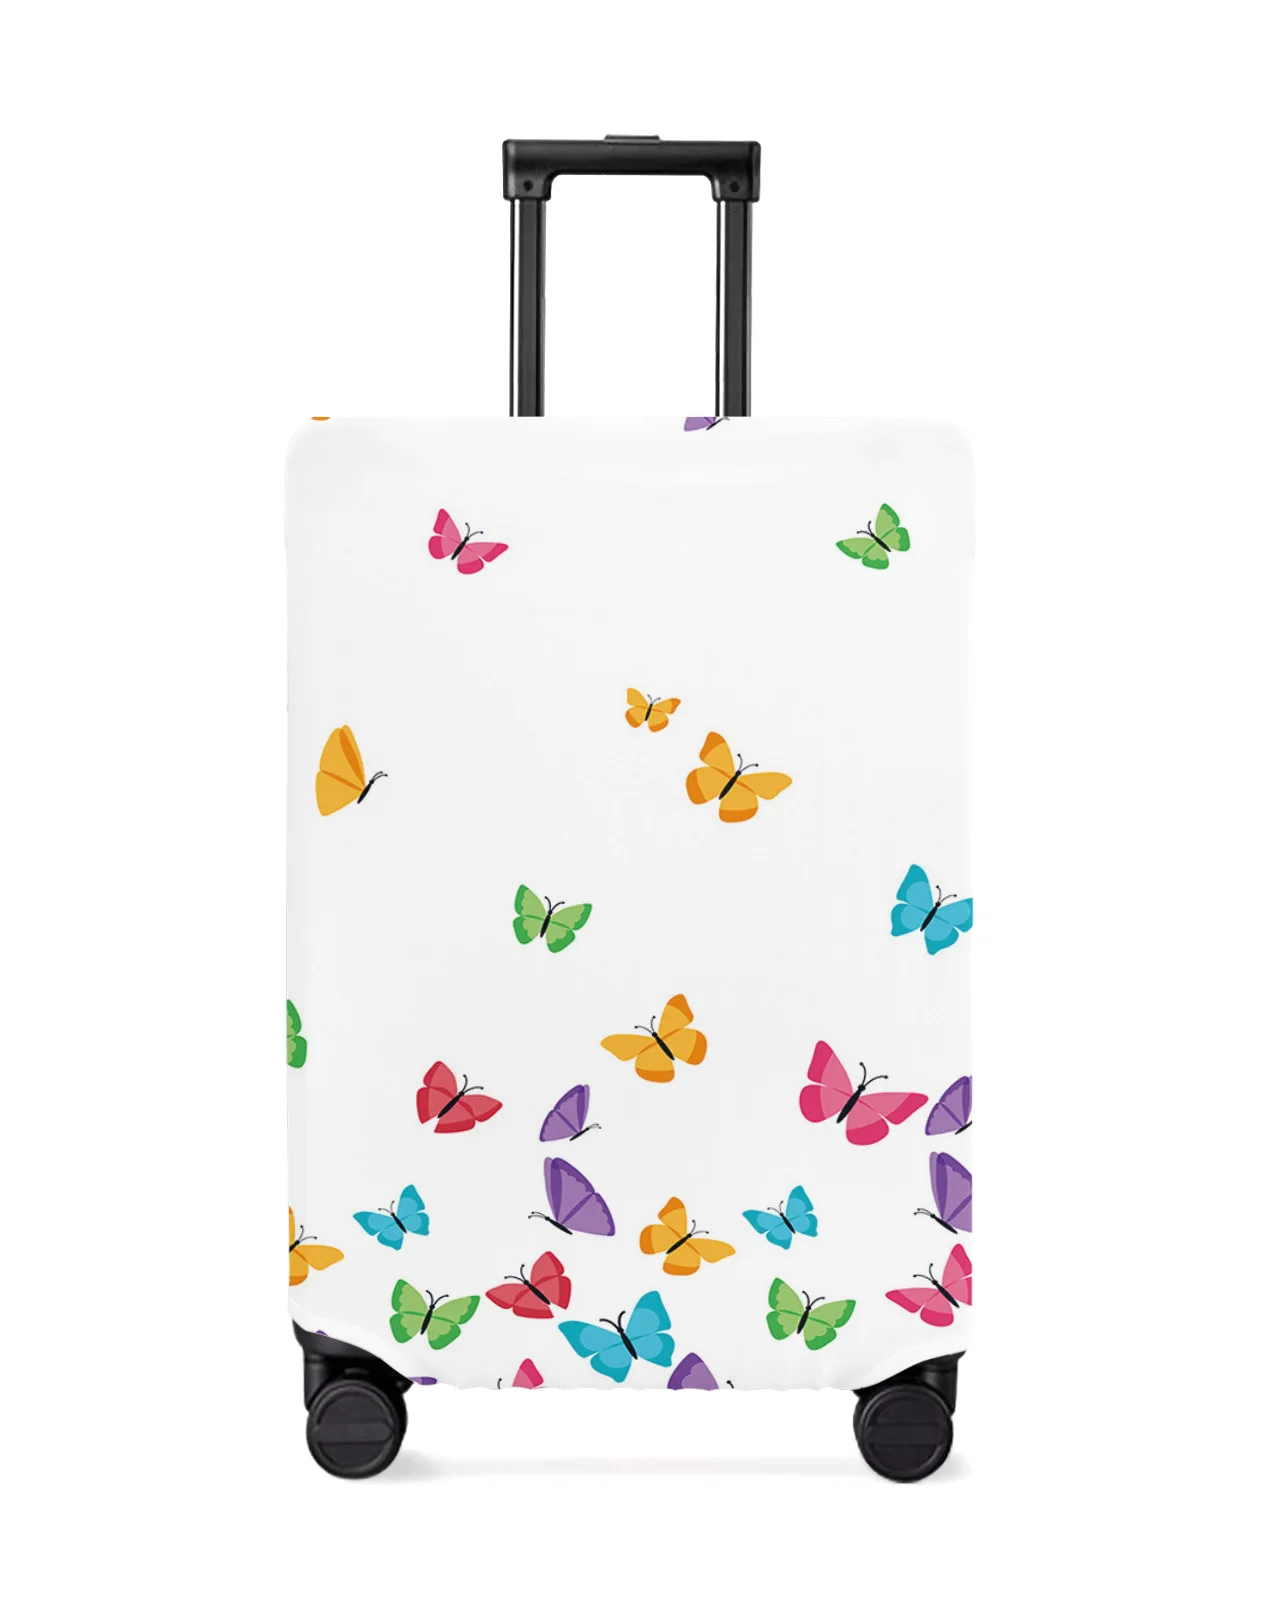 juste-de-protection-pour-bagages-de-voyage-papillon-colore-blanc-accessoires-de-valise-etui-anti-poussiere-elastique-manchon-de-protection